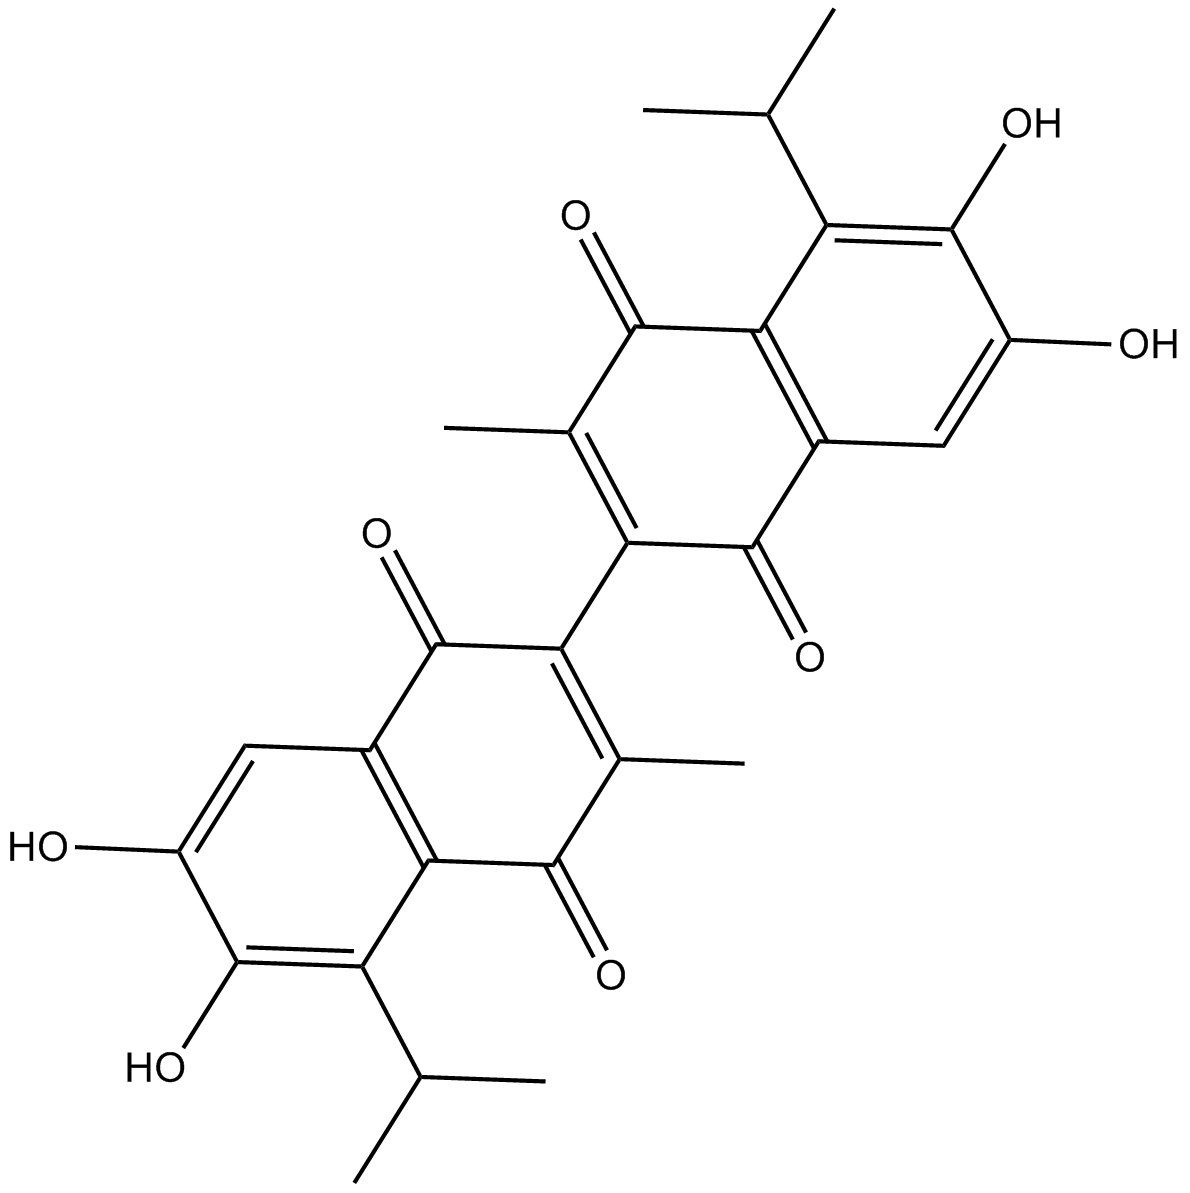 Apogossypolone (ApoG2)